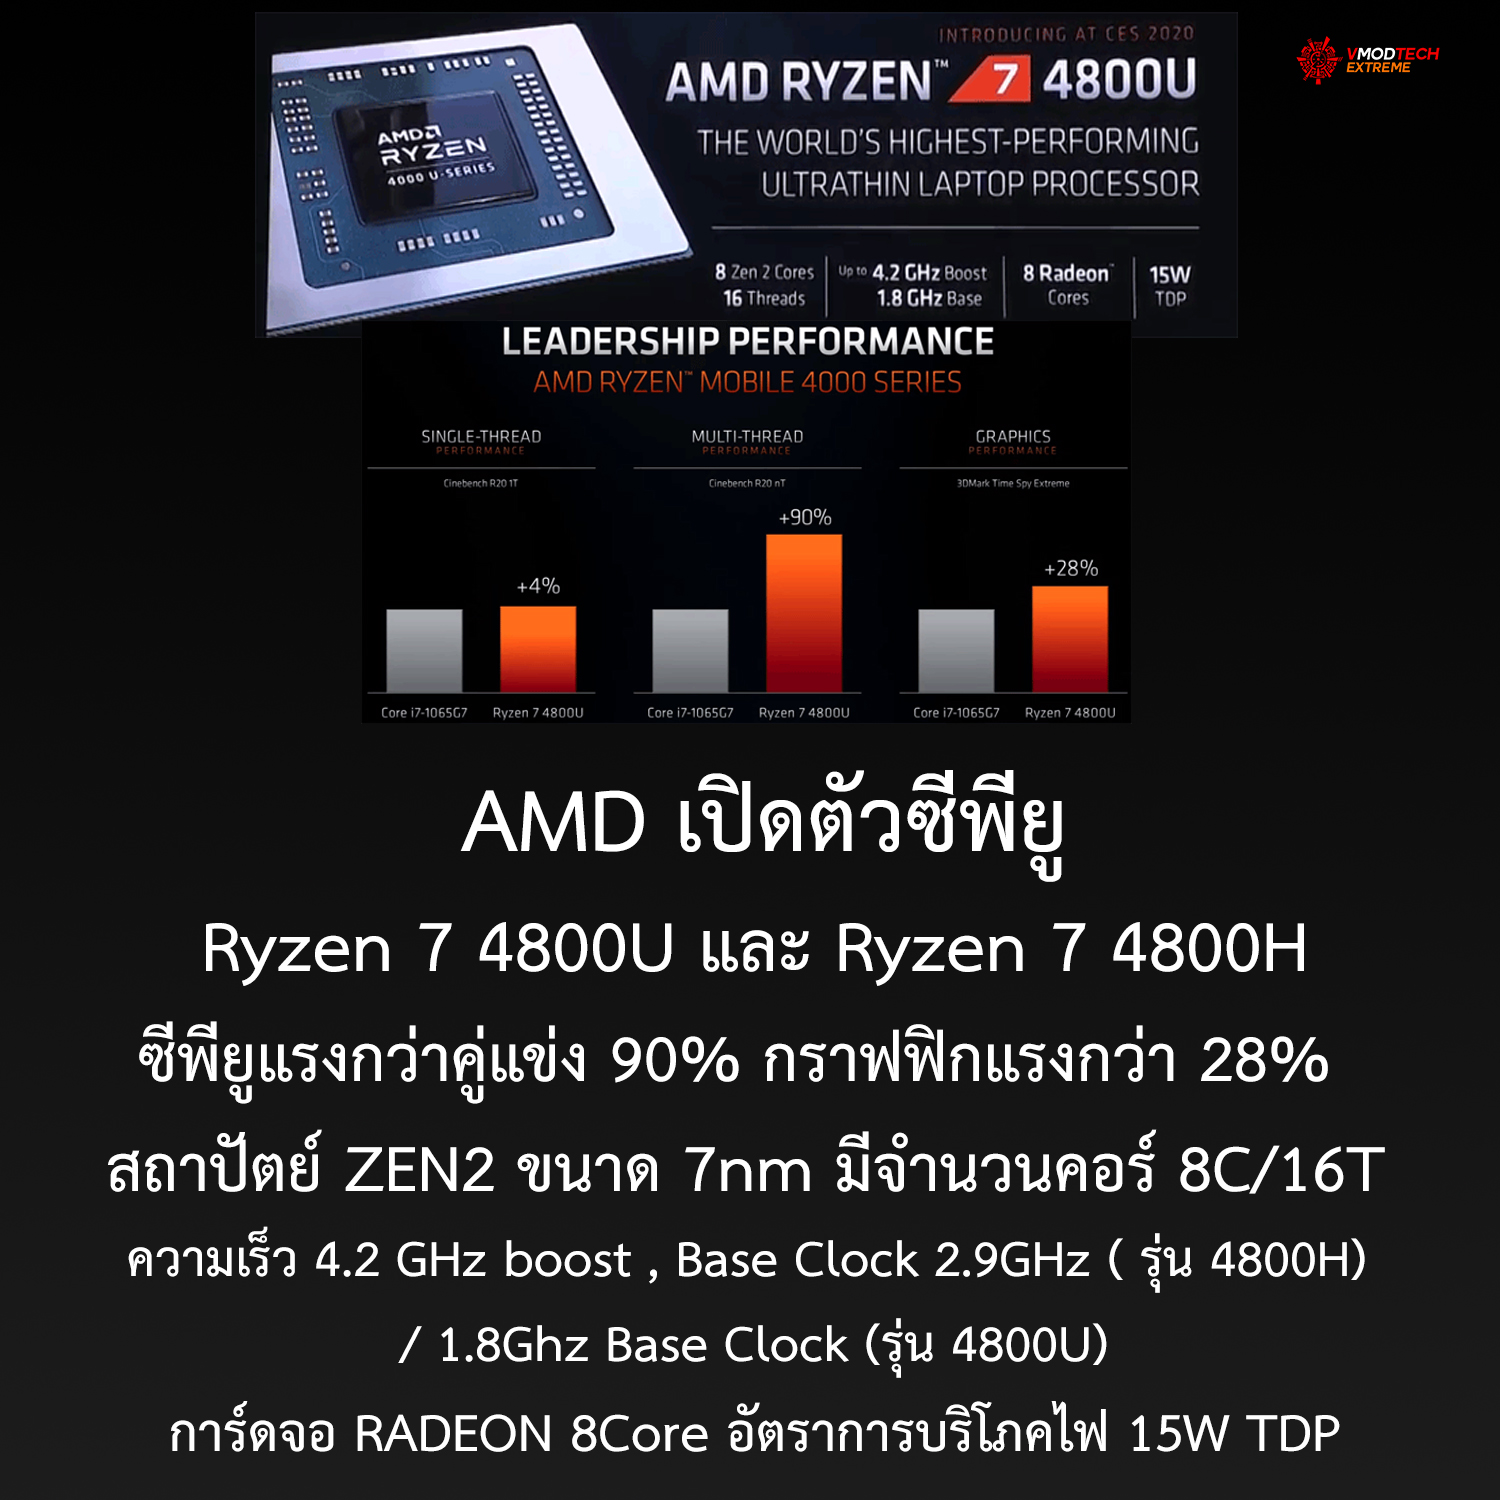 amd ryzen 4000 mobile processors 4800u 4800h AMD เปิดตัวซีพียู AMD Ryzen 4000 Mobile สองรุ่น 4800U และ 4800H ที่ใช้งานในแล็ปท็อป